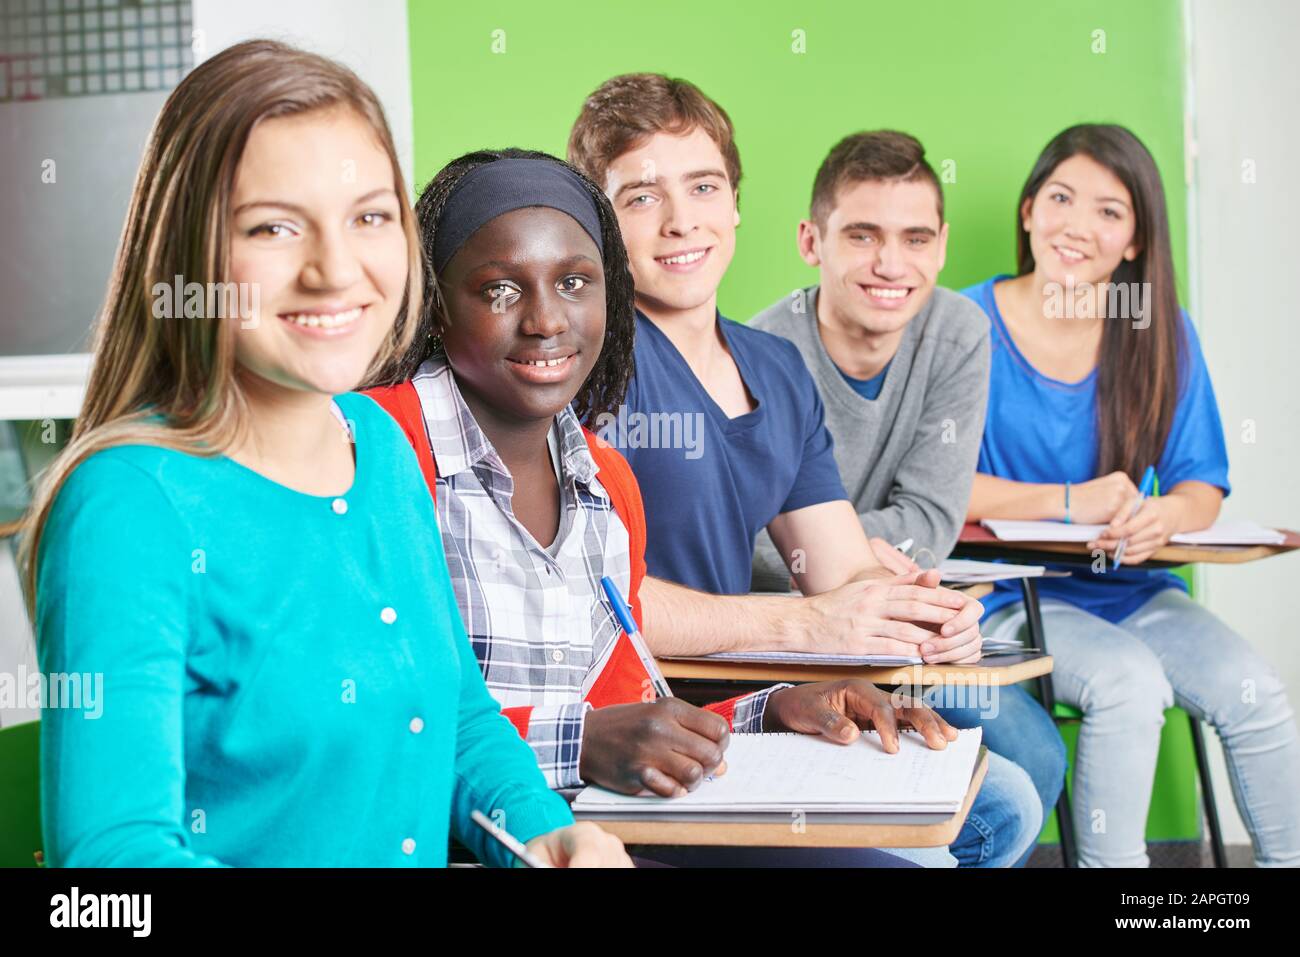 Multikulturelle Gruppe von Schülern, die lächelnd in der Schule sitzen Stockfoto